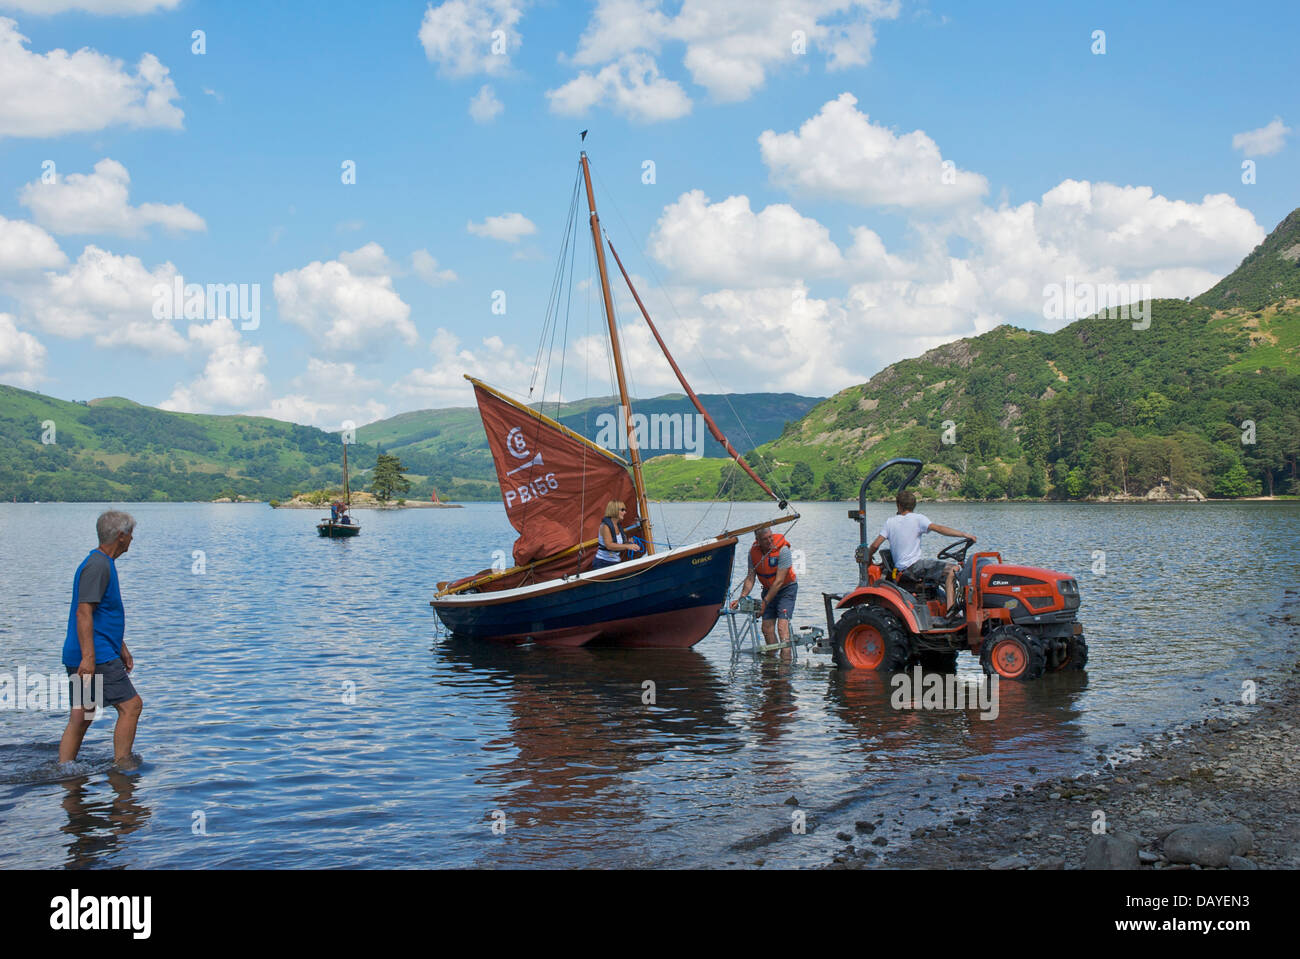 Le transport de bateau à voile sur la remorque, Glenridding Sailing Club, Ullswater, Lake District, Cumbria, Angleterre, Royaume-Uni Banque D'Images